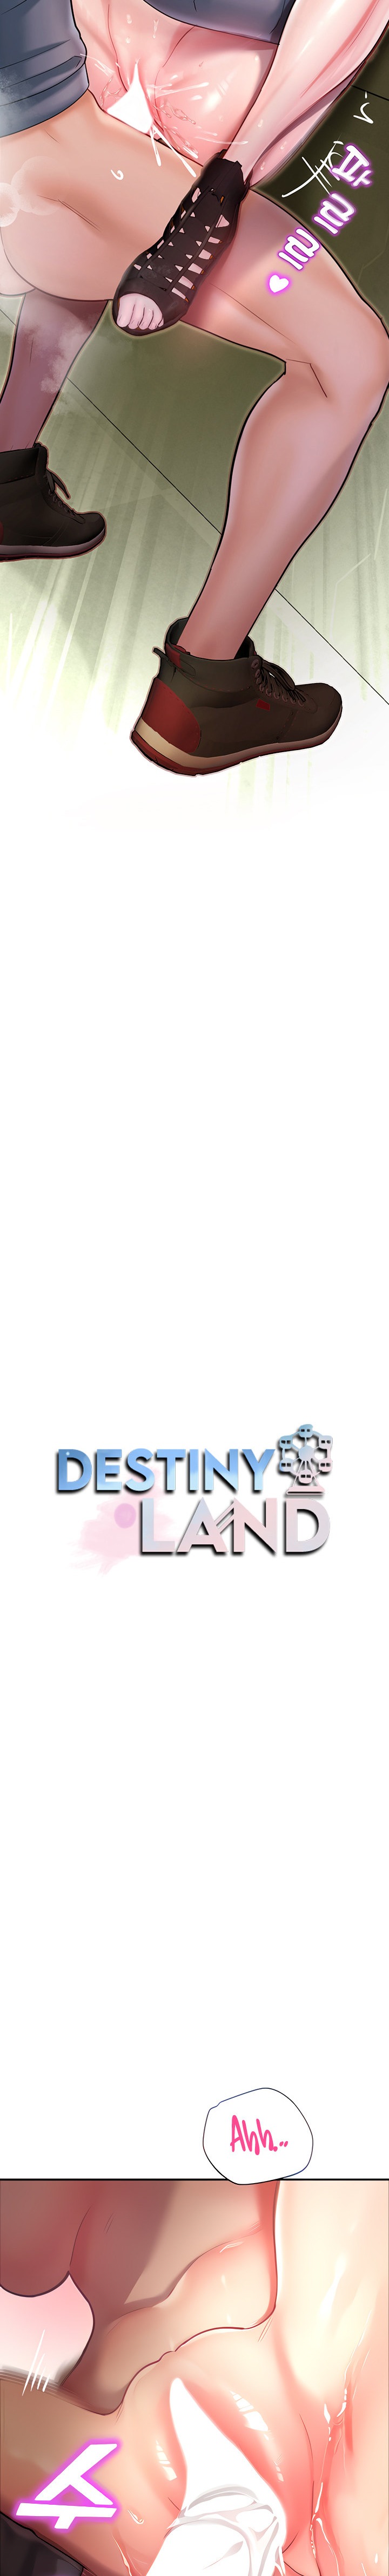 Destiny Land - Chapter 8 Page 5